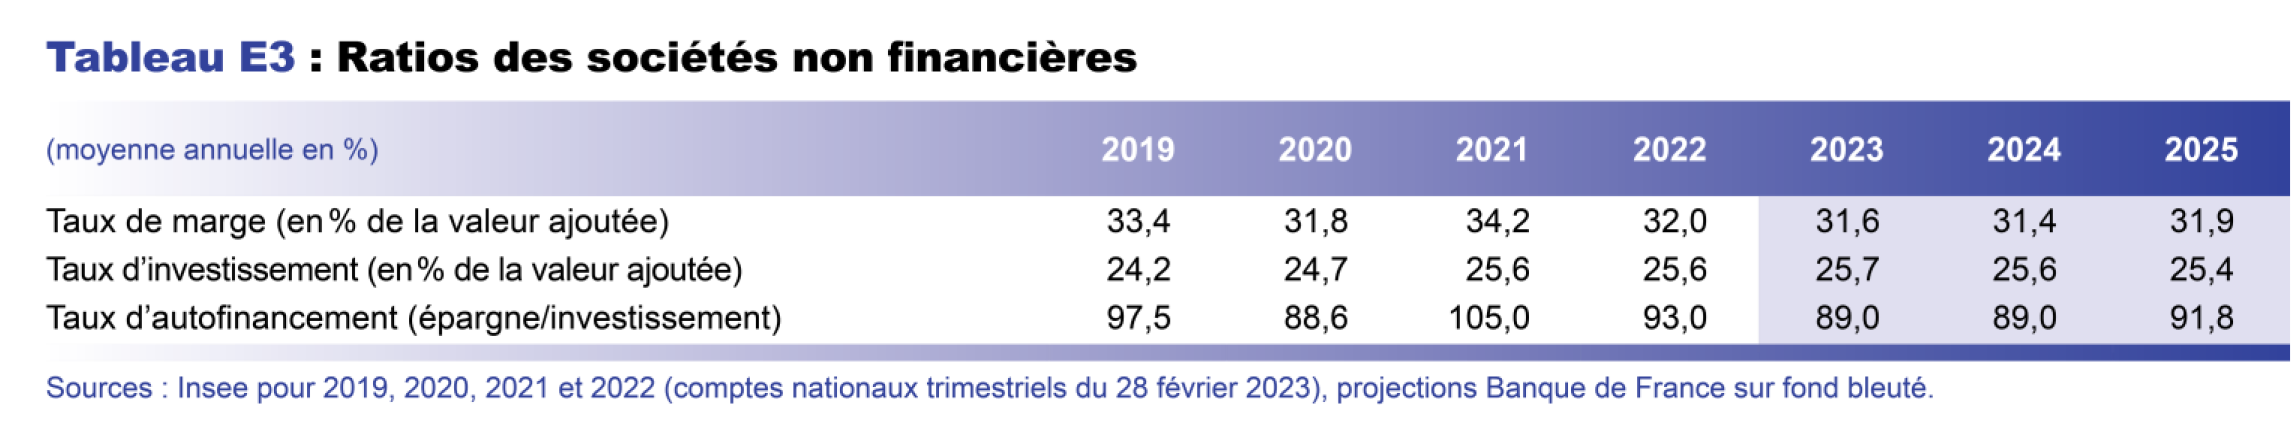 Projection macro mars 2023 - Ratios des sociétés non financières